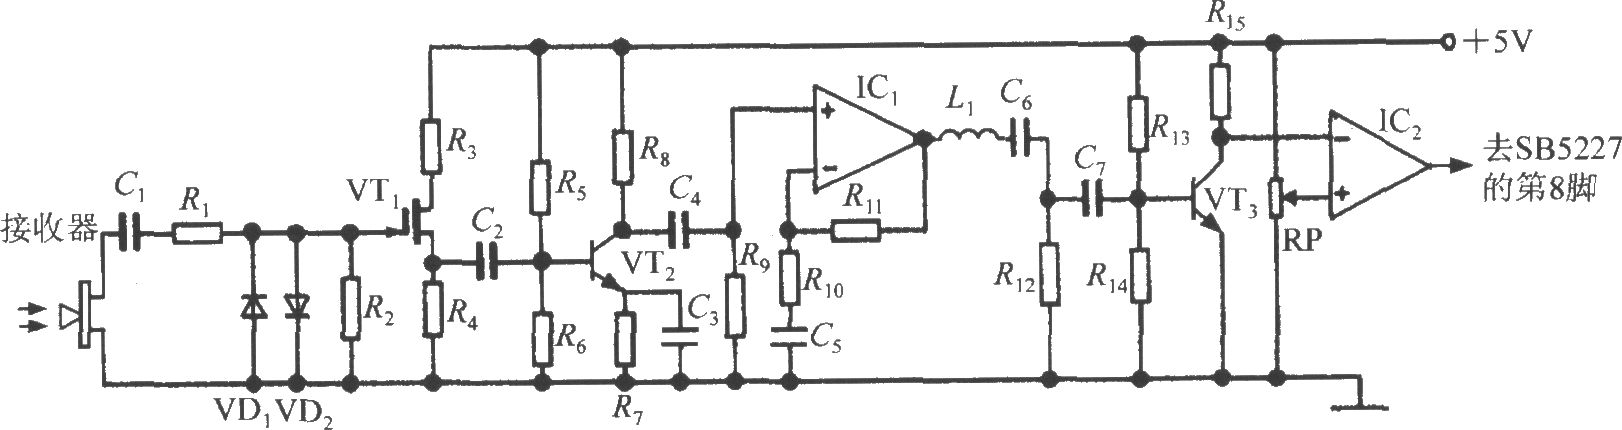 智能化超声波测距专用集成电路SB5227外围电路设计